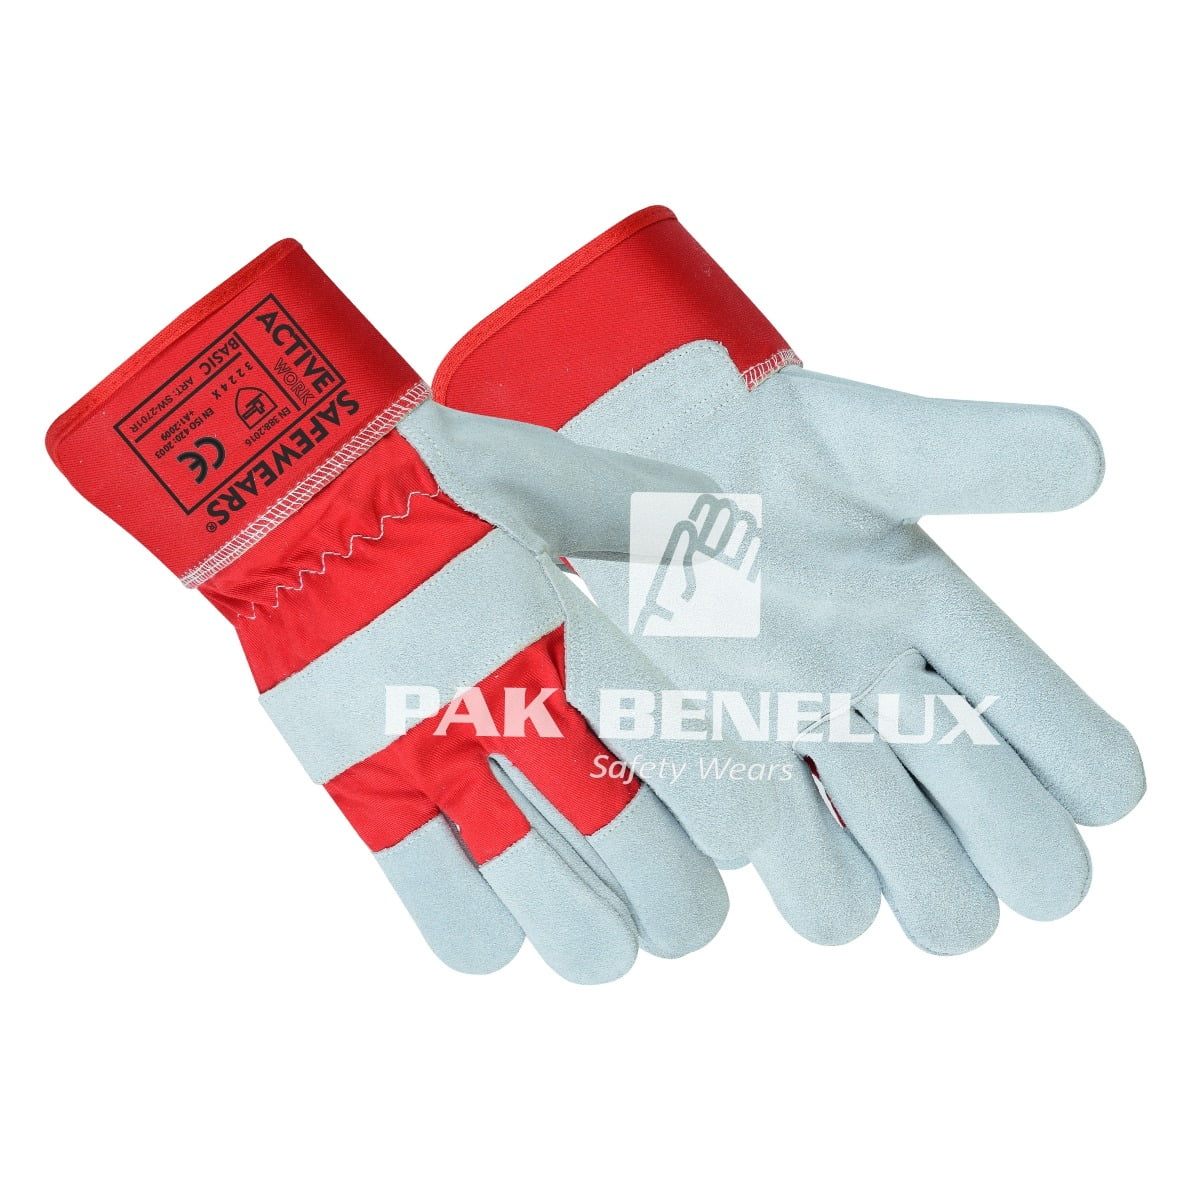 Work gloves Manufacturer in Pakistan